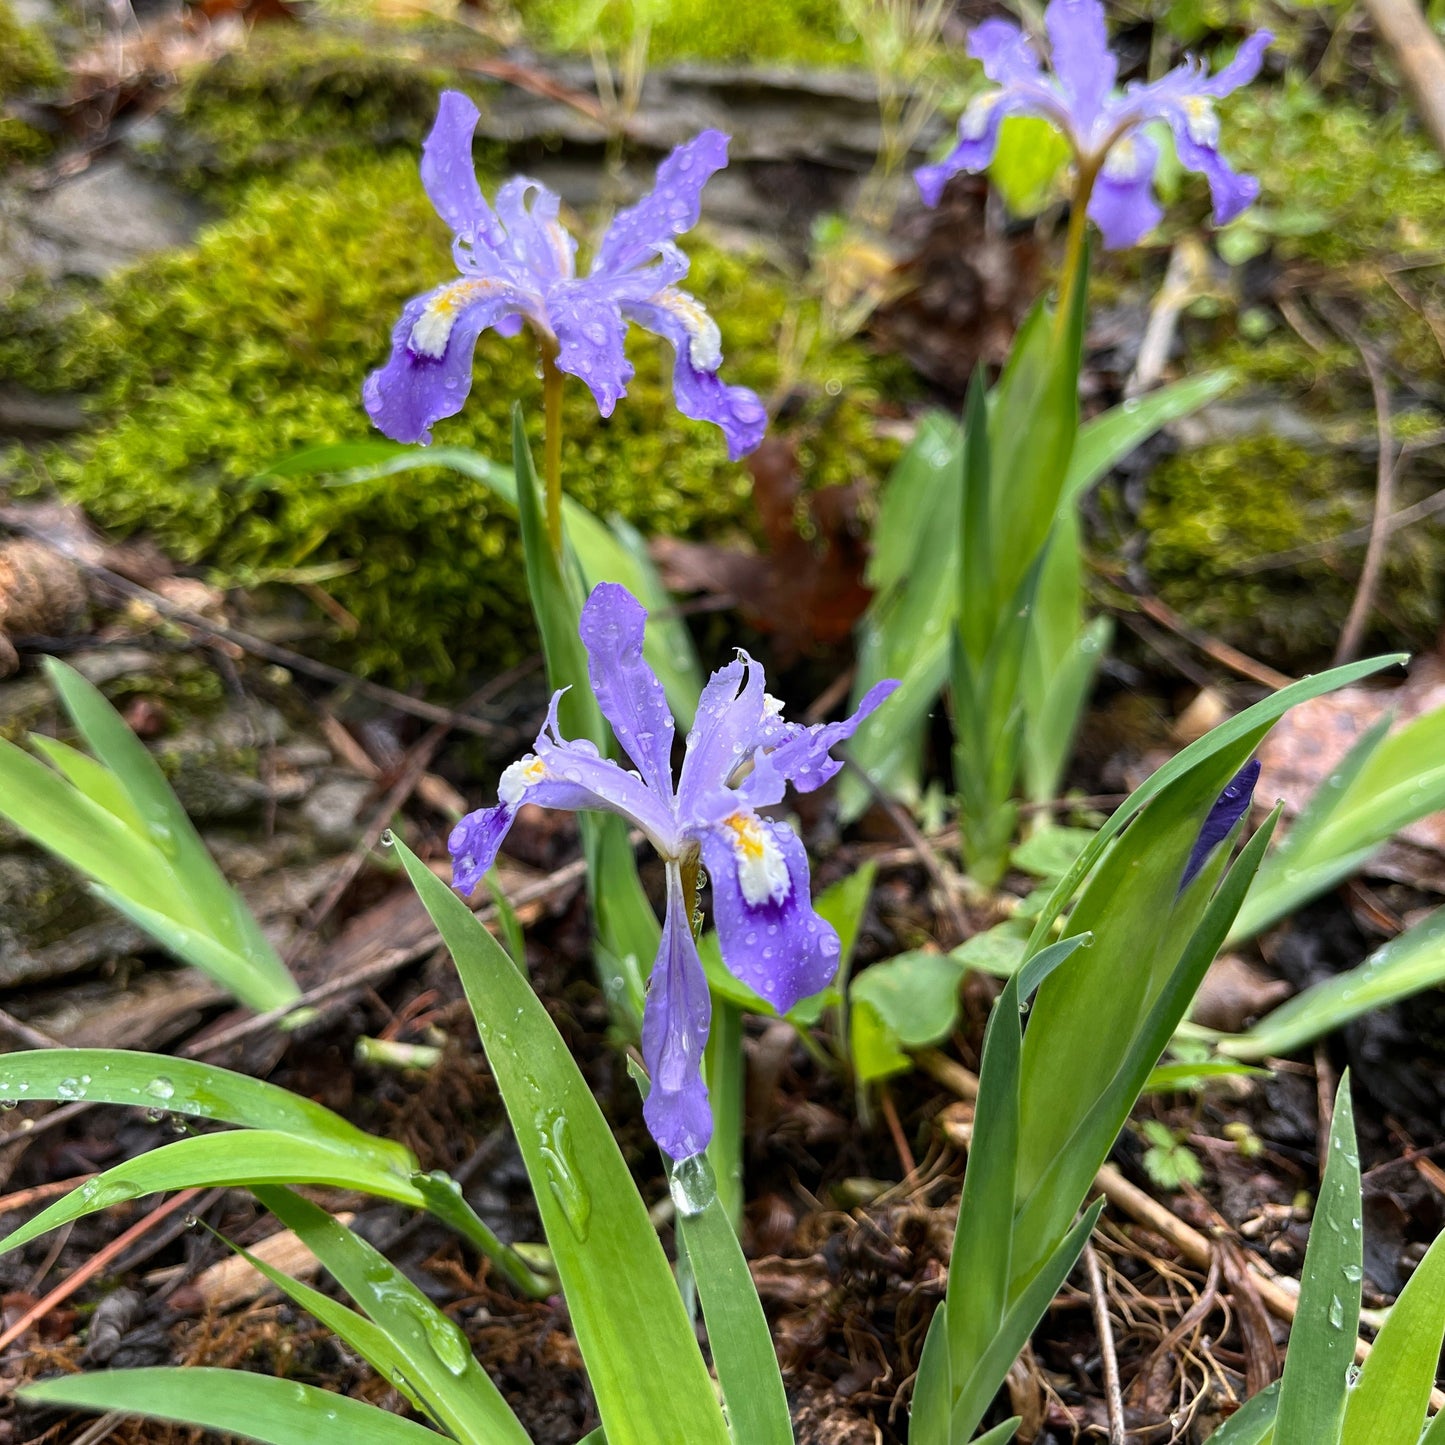 dwarf crested iris in flower